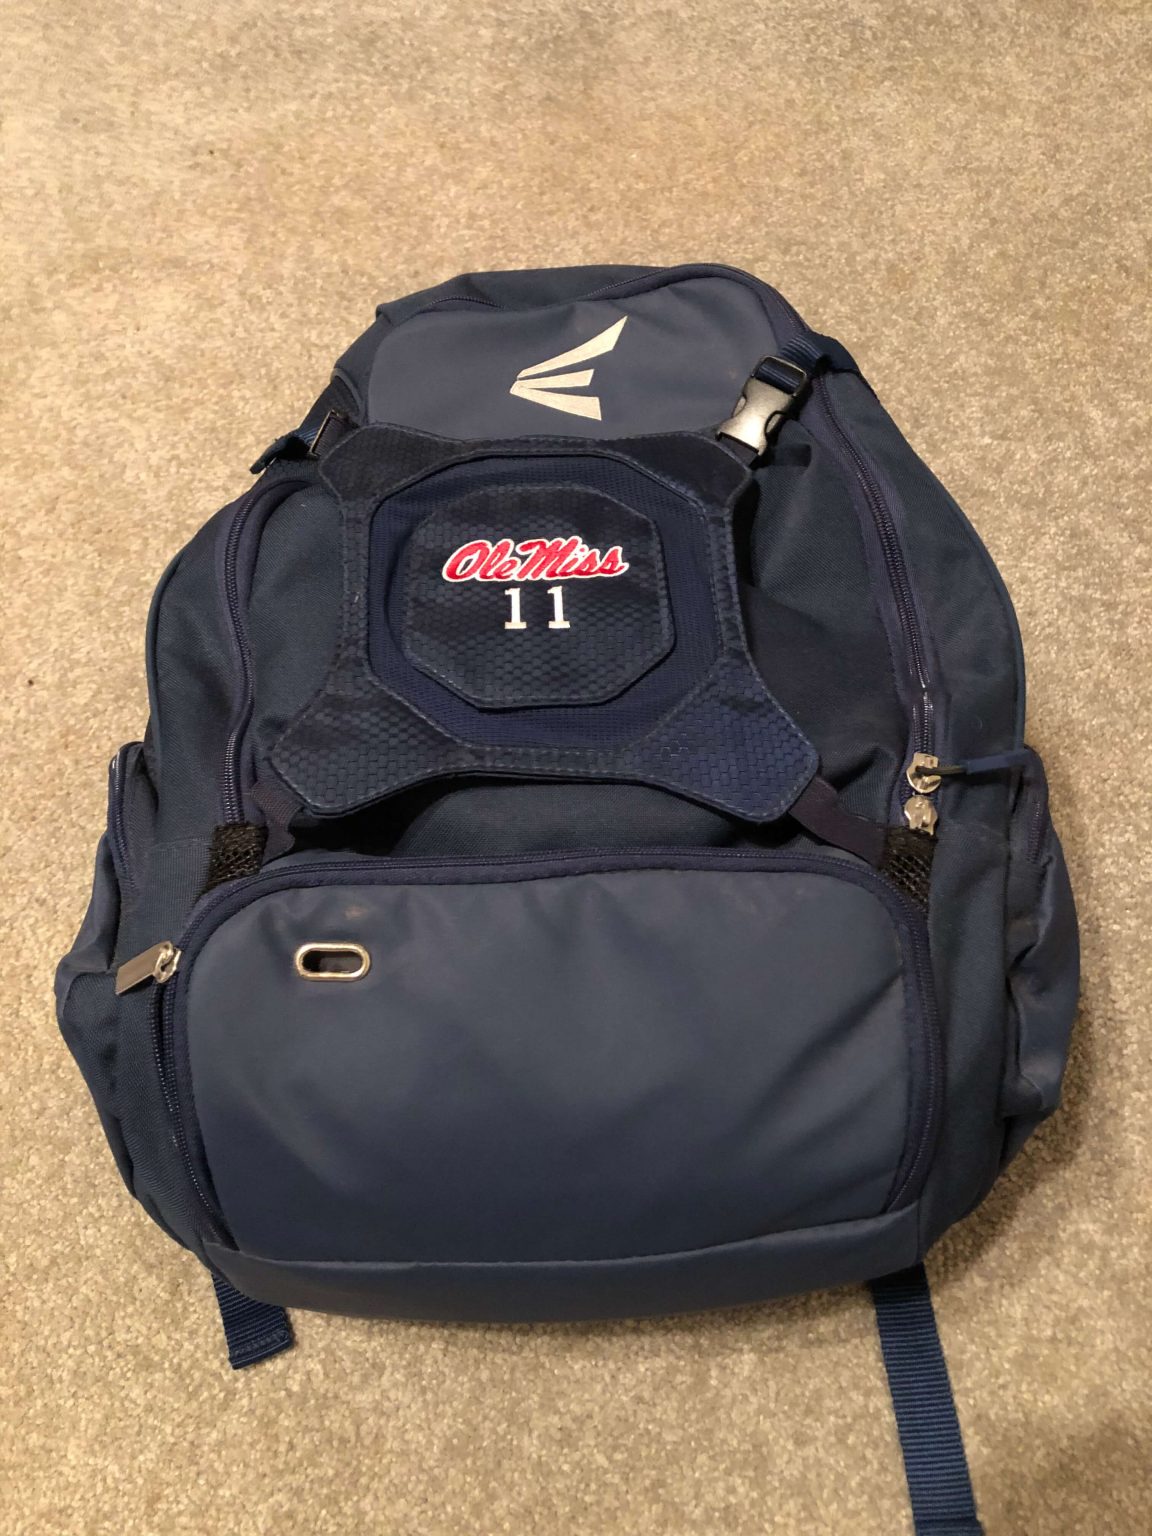 Ole Miss Baseball Backpack : NARP Clothing